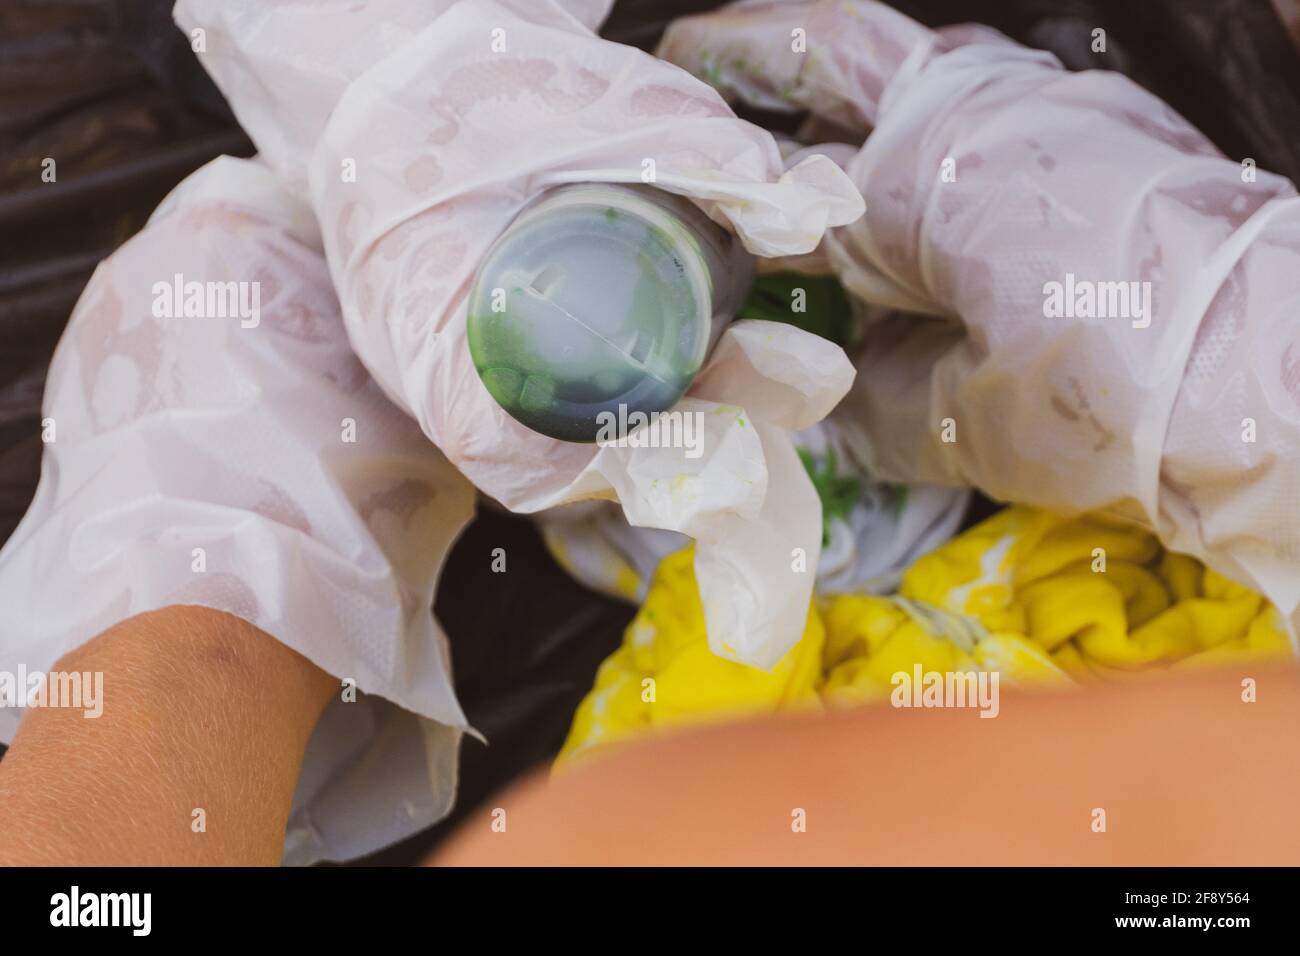 Lancette per bambini tie dye mani mettendo tinta giallo e verde su una camicia bianca per concetti artistici creativi. Foto Stock